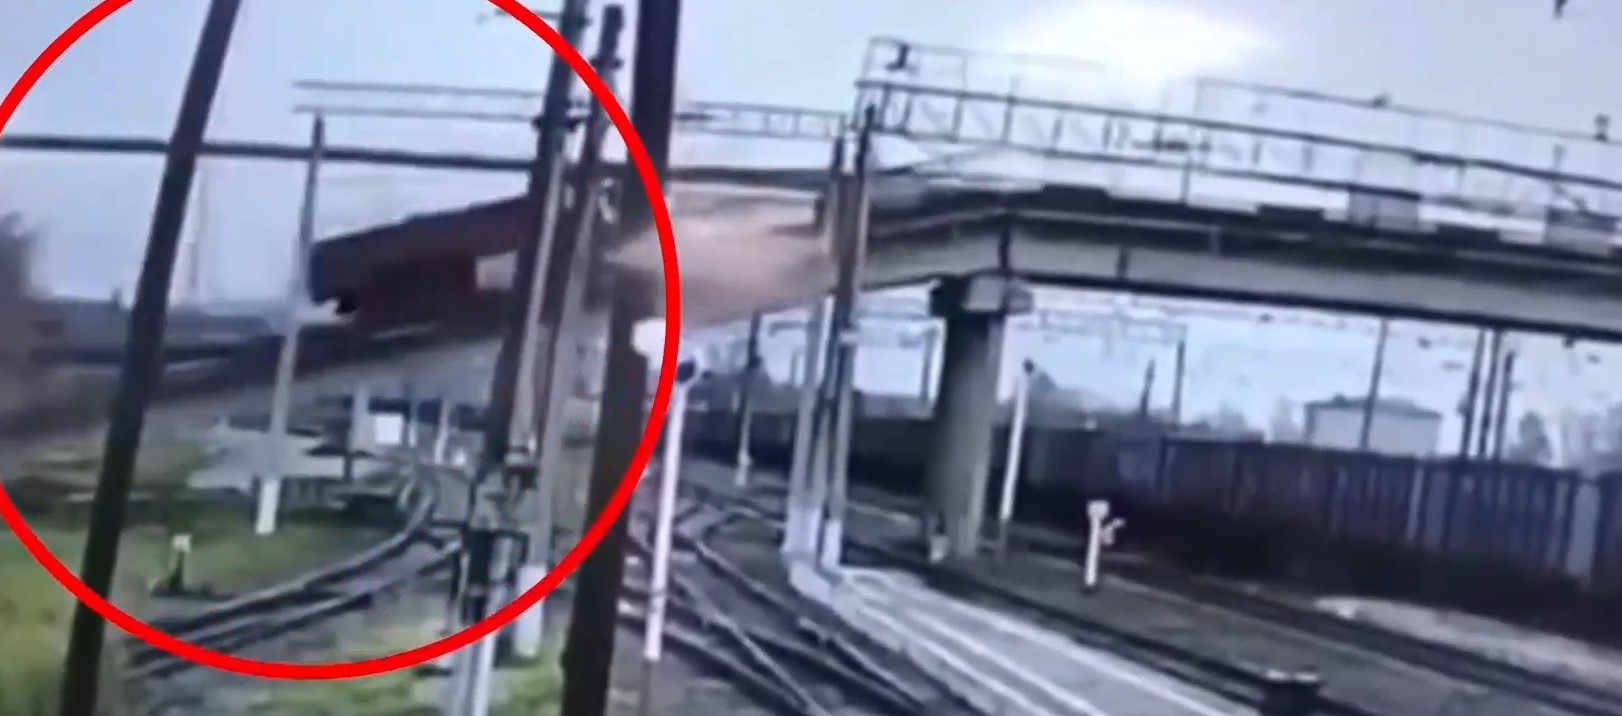 Ρωσία: Βίντεο ντοκουμέντο από κατάρρευση γέφυρας πάνω σε γραμμές τρένου - Μία νεκρή και έξι τραυματίες